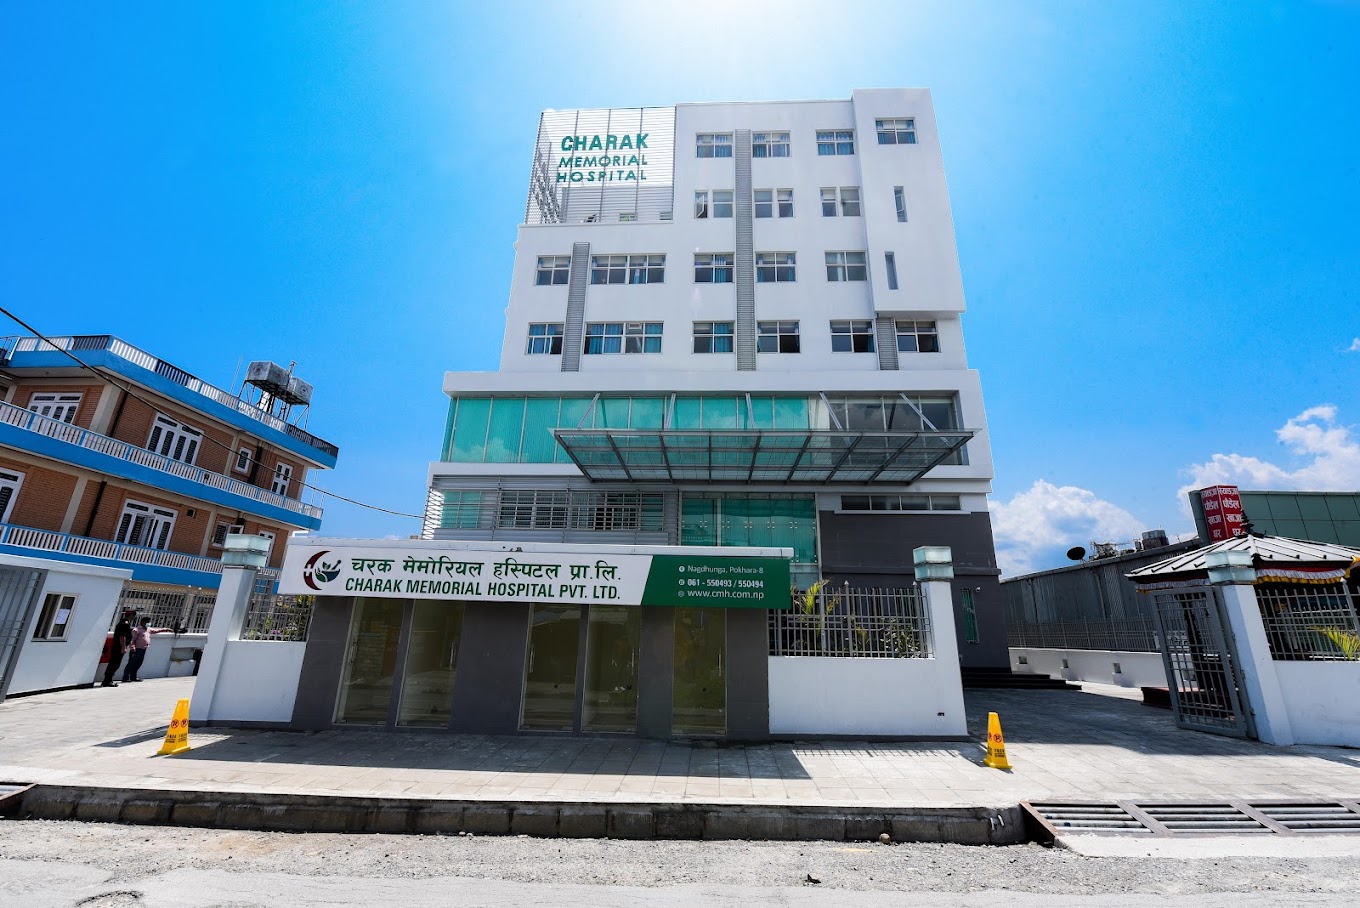 Charak Memorial Hospital